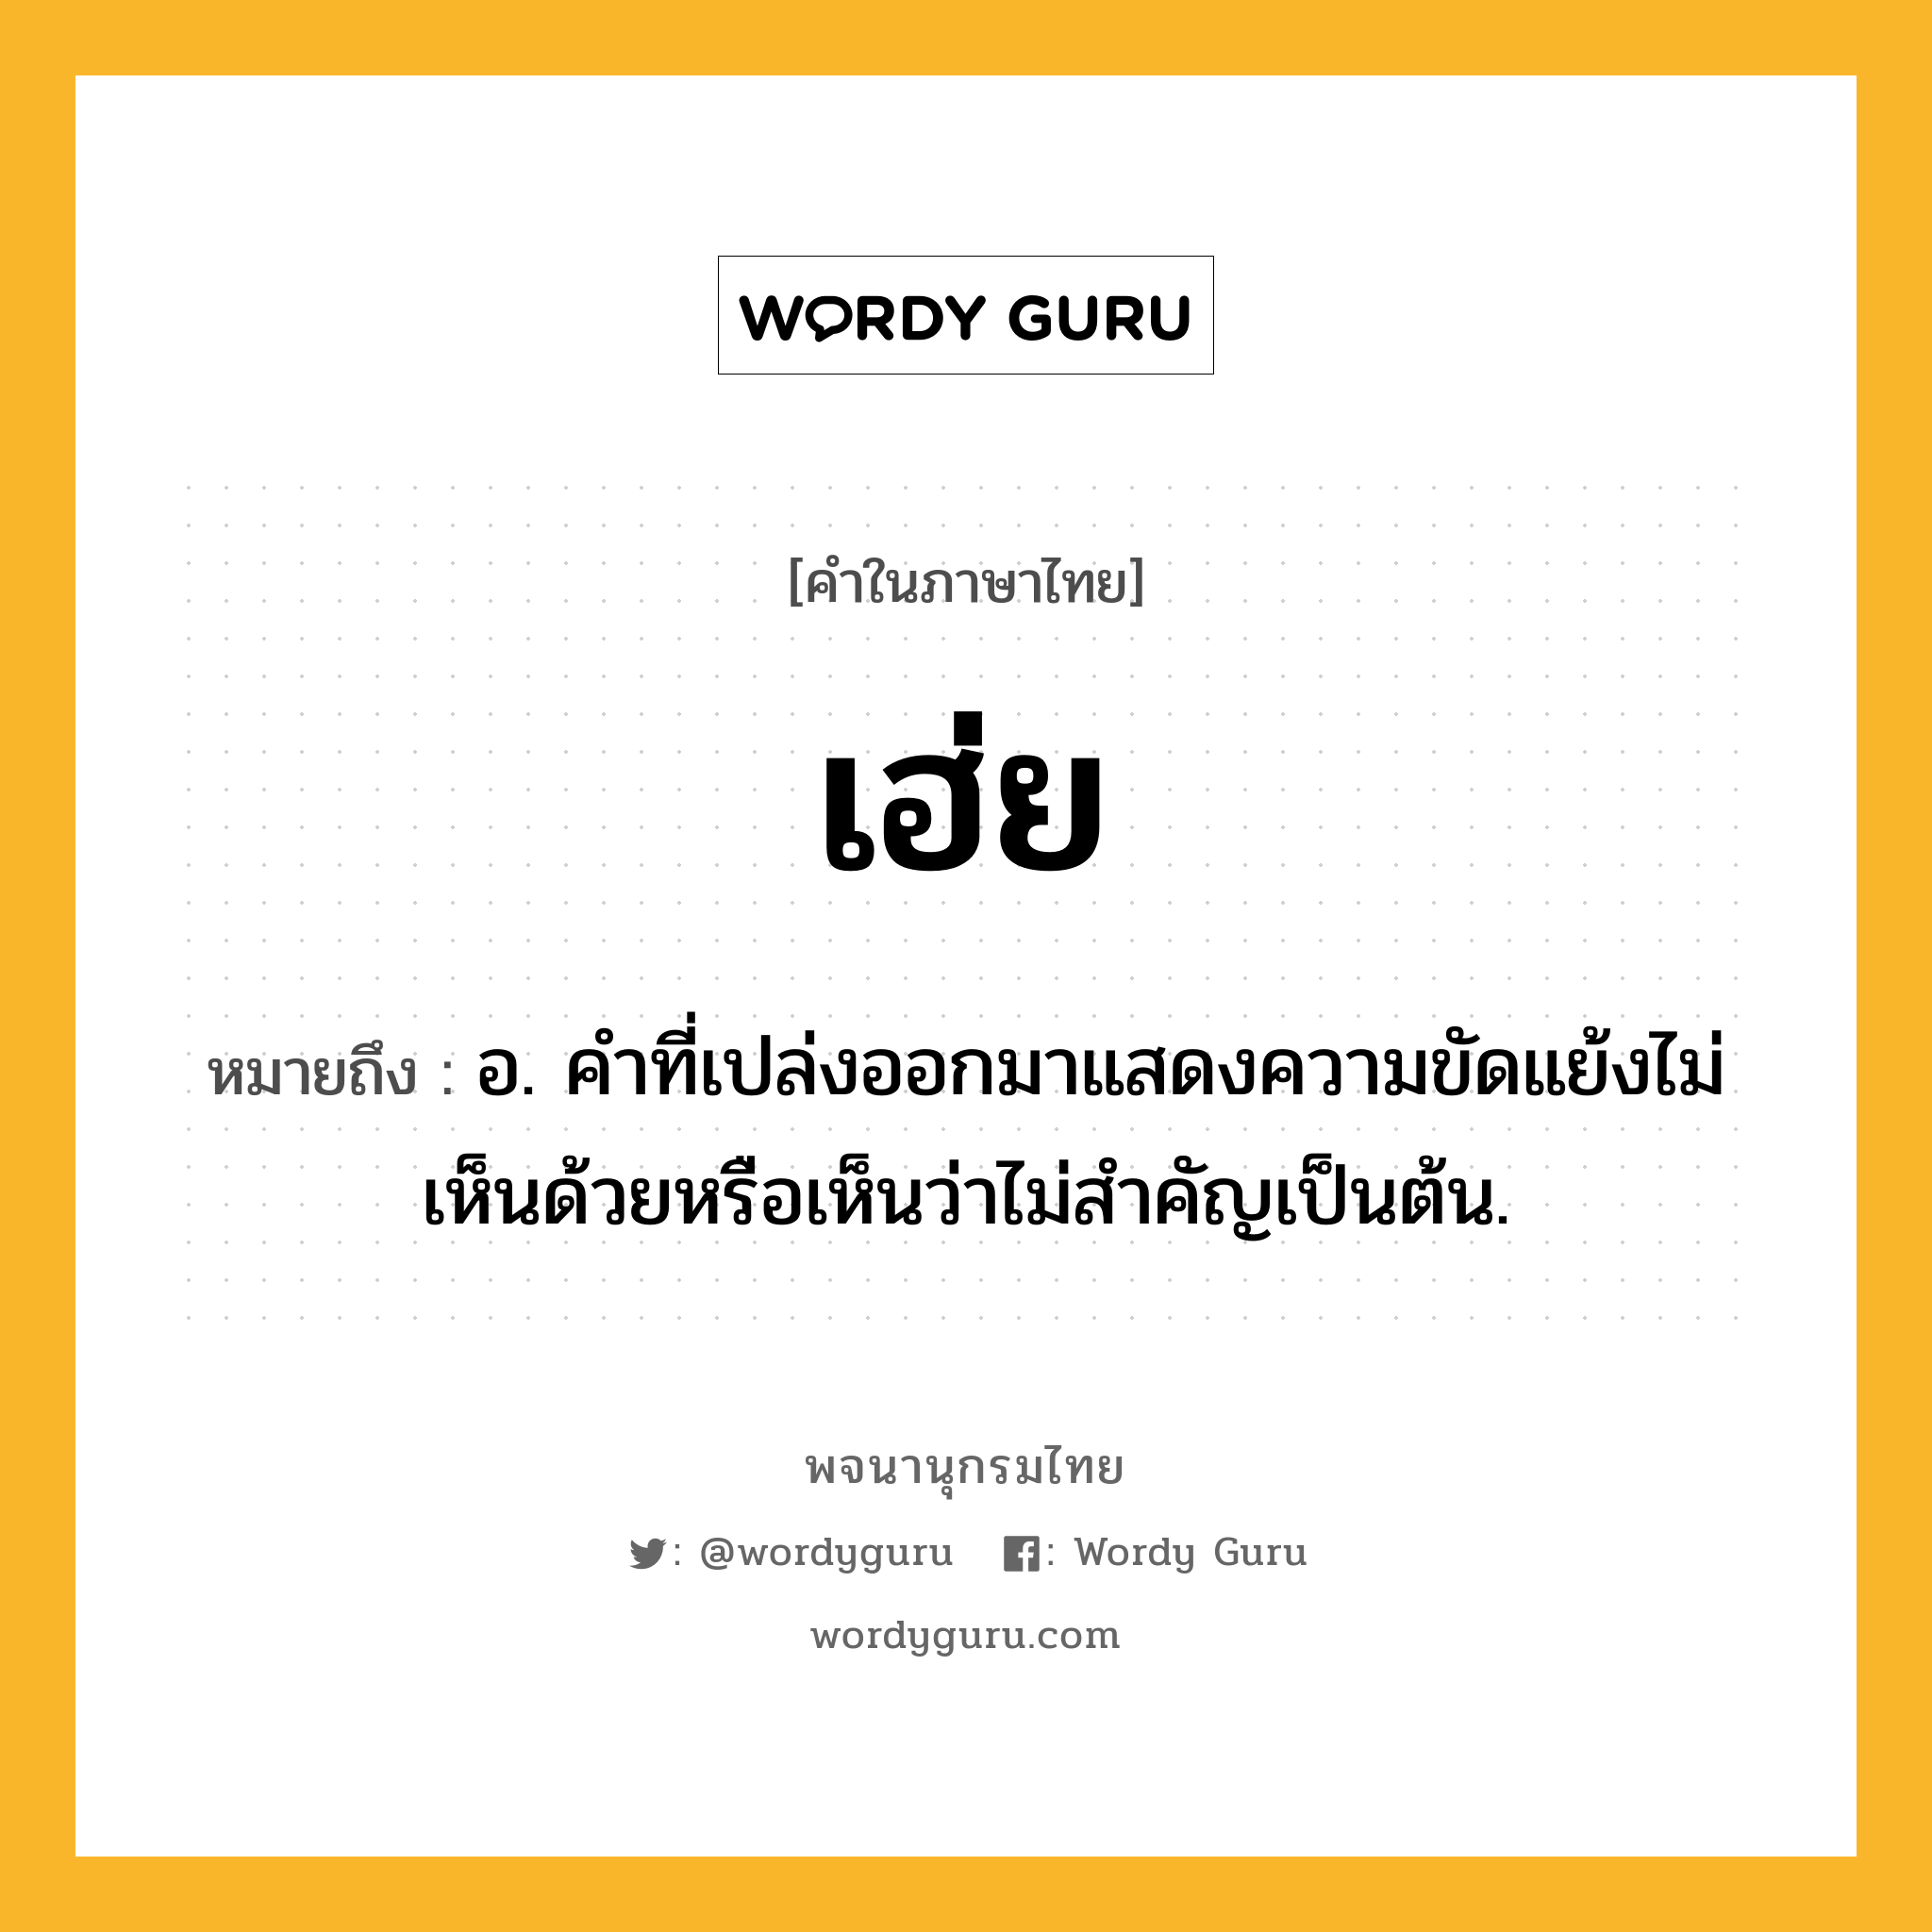 เฮ่ย หมายถึงอะไร?, คำในภาษาไทย เฮ่ย หมายถึง อ. คำที่เปล่งออกมาแสดงความขัดแย้งไม่เห็นด้วยหรือเห็นว่าไม่สำคัญเป็นต้น.